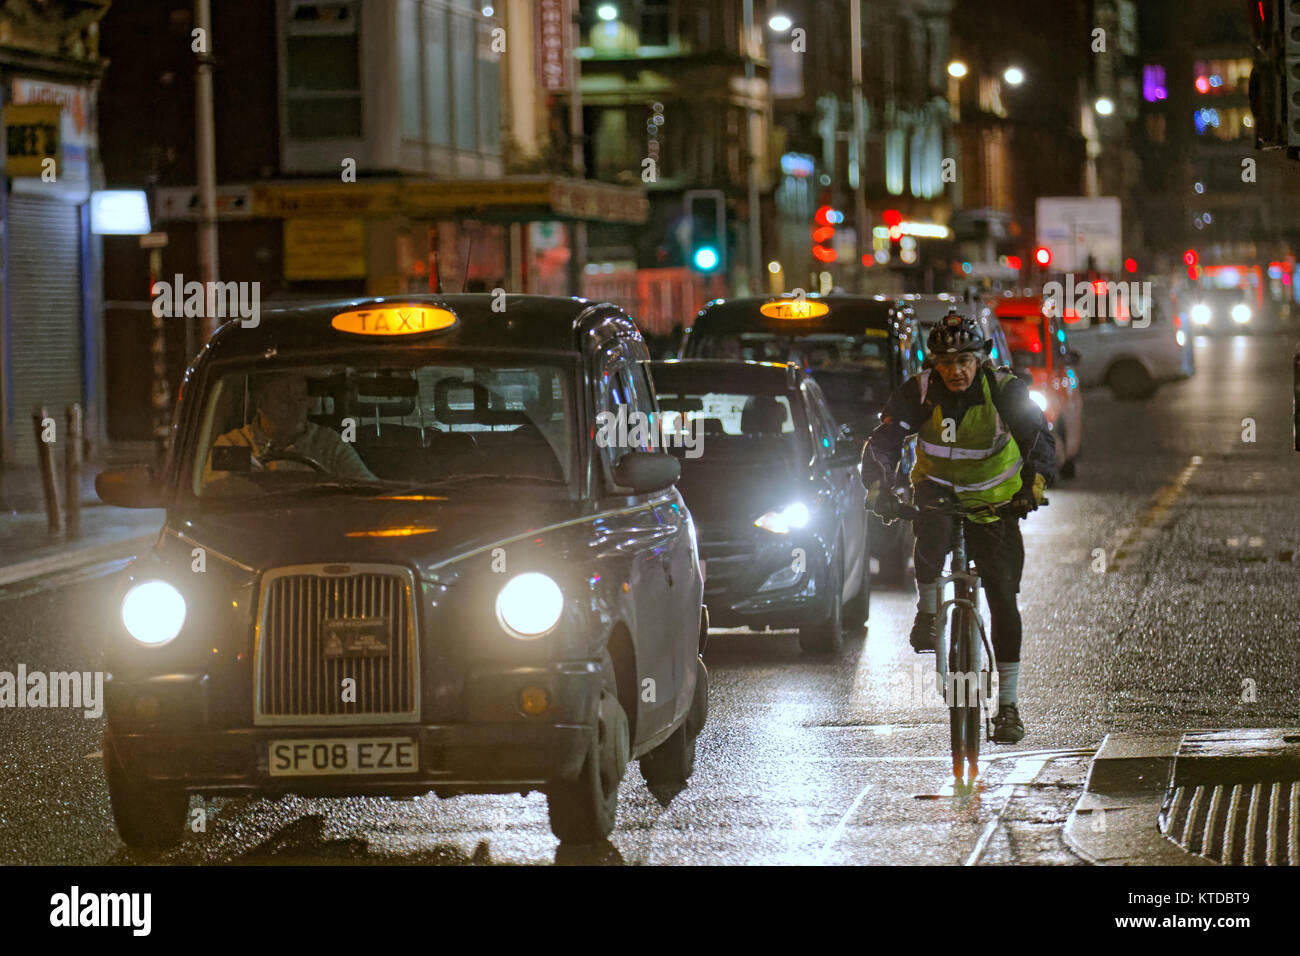 Taxi nero a tarda notte in strada con uomo maschio ciclista sulla bicicletta dando spazio vicino ad altri taxi in una linea di traffico Foto Stock